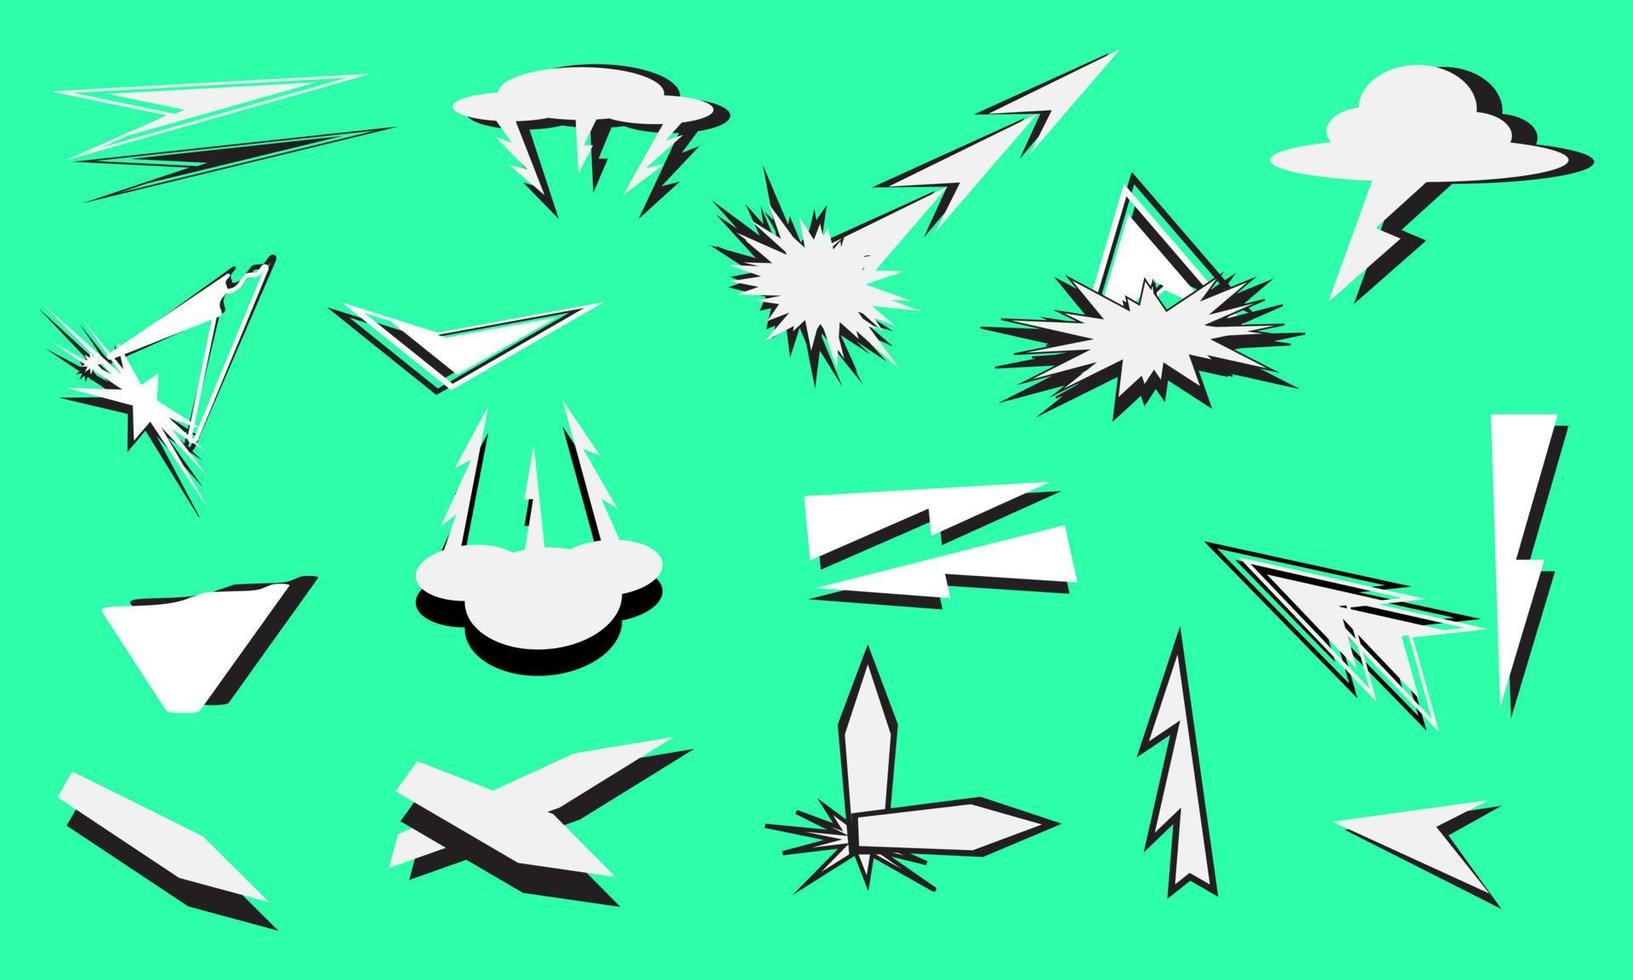 conjunto de ícones de silhueta de explosão de marca de seta de direção elemento decorativo ilustração em vetor de fundo de quadrinhos